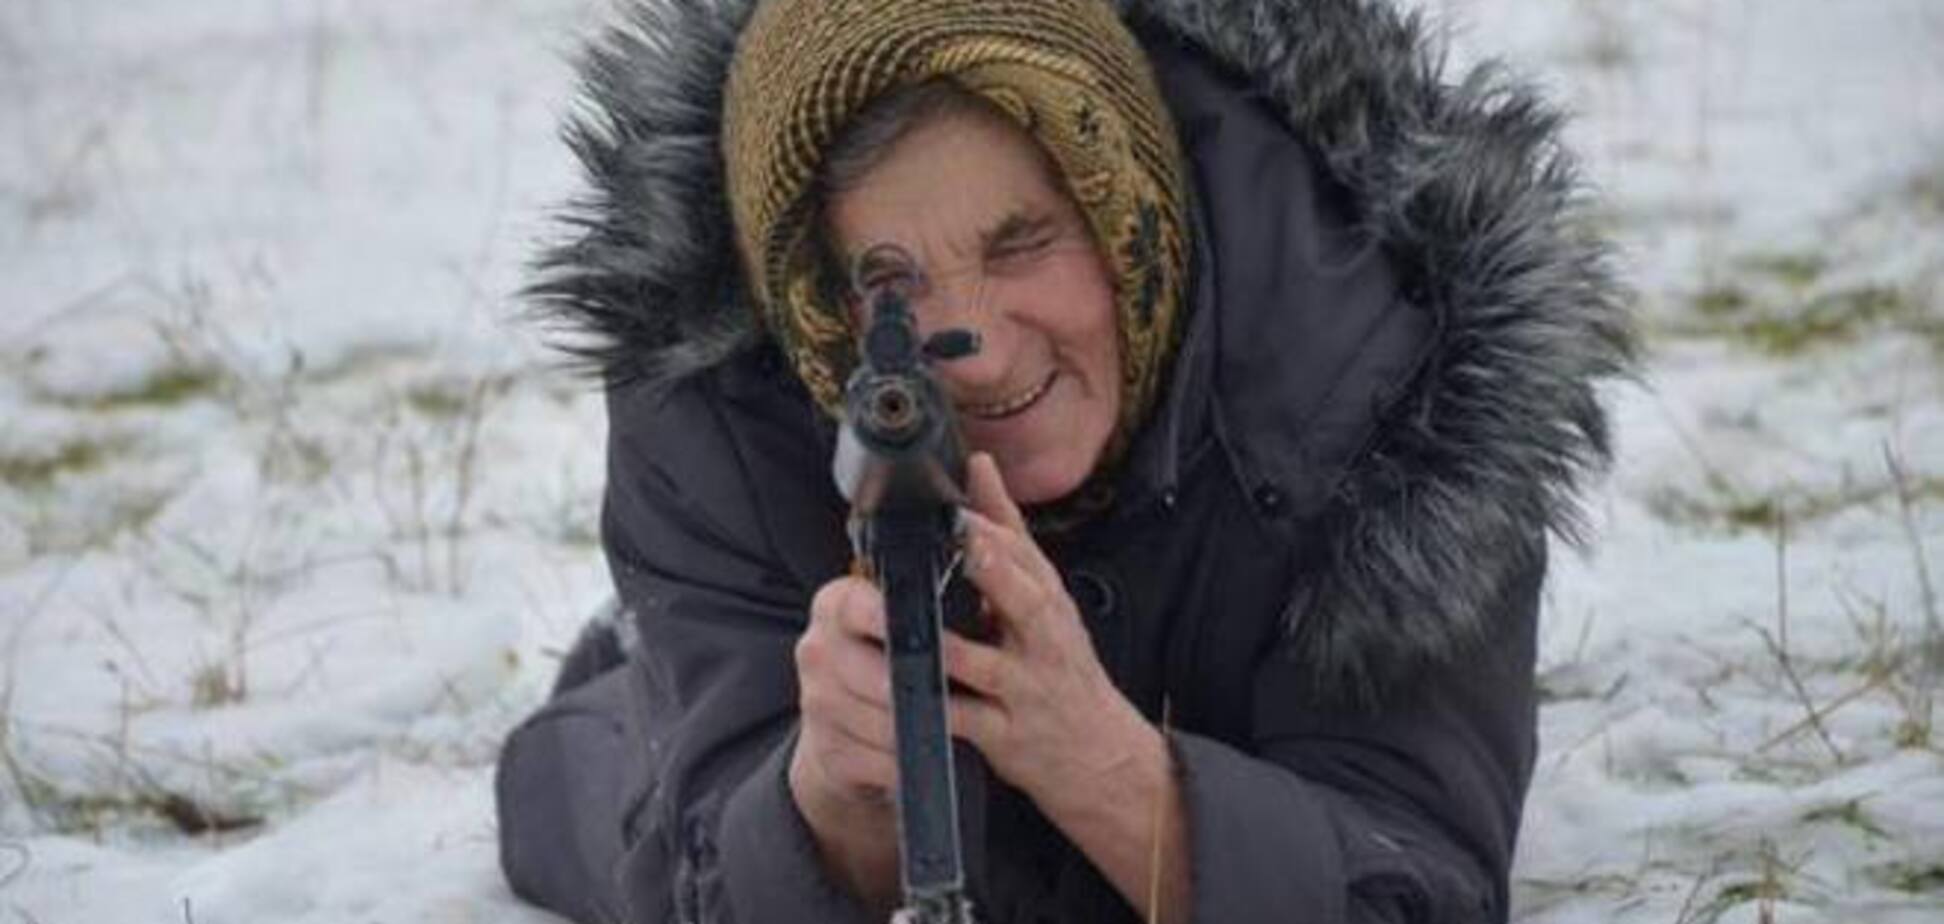 У мережі з'явилися фото української пенсіонерки з автоматом на військових навчаннях